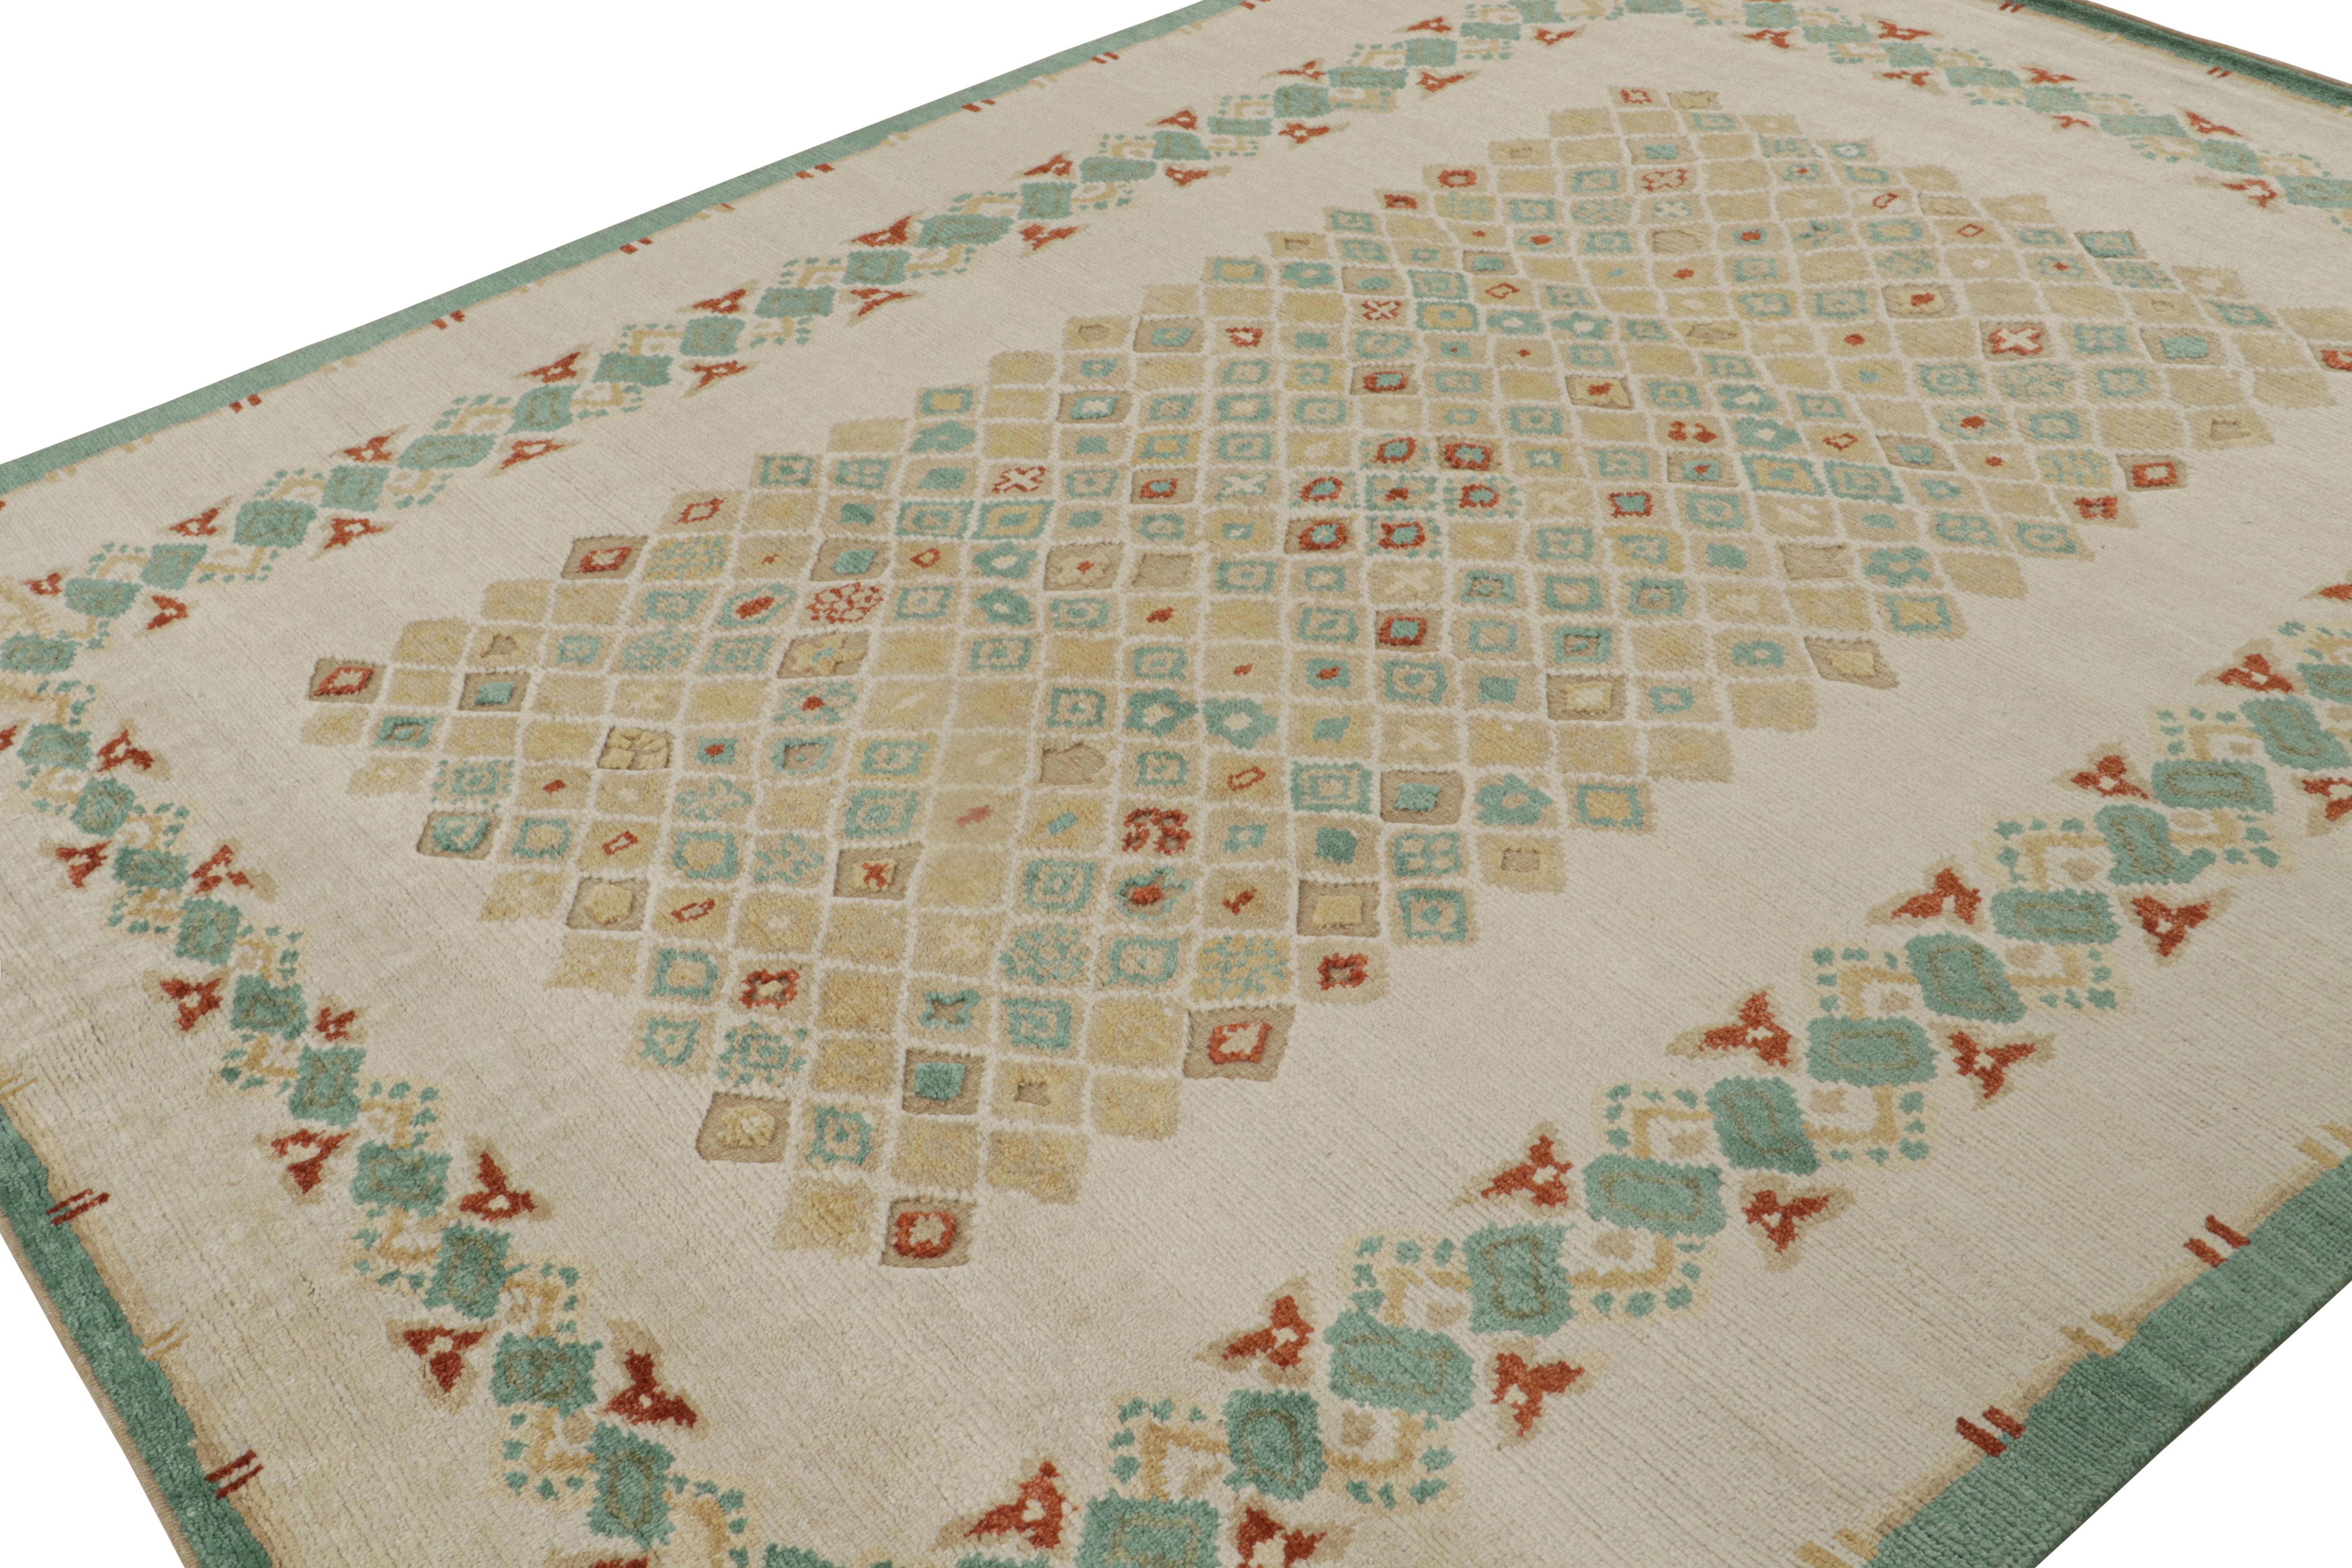 Dieser 8x10 große moderne Teppich aus handgeknüpfter Wolle stammt aus der Kollektion French Art Deco Rug von Rug & Kilim - eine zeitgenössische Neuinterpretation von Stücken aus dem Frankreich der 1920er Jahre.

Über das Design: 

Der Teppich zeigt